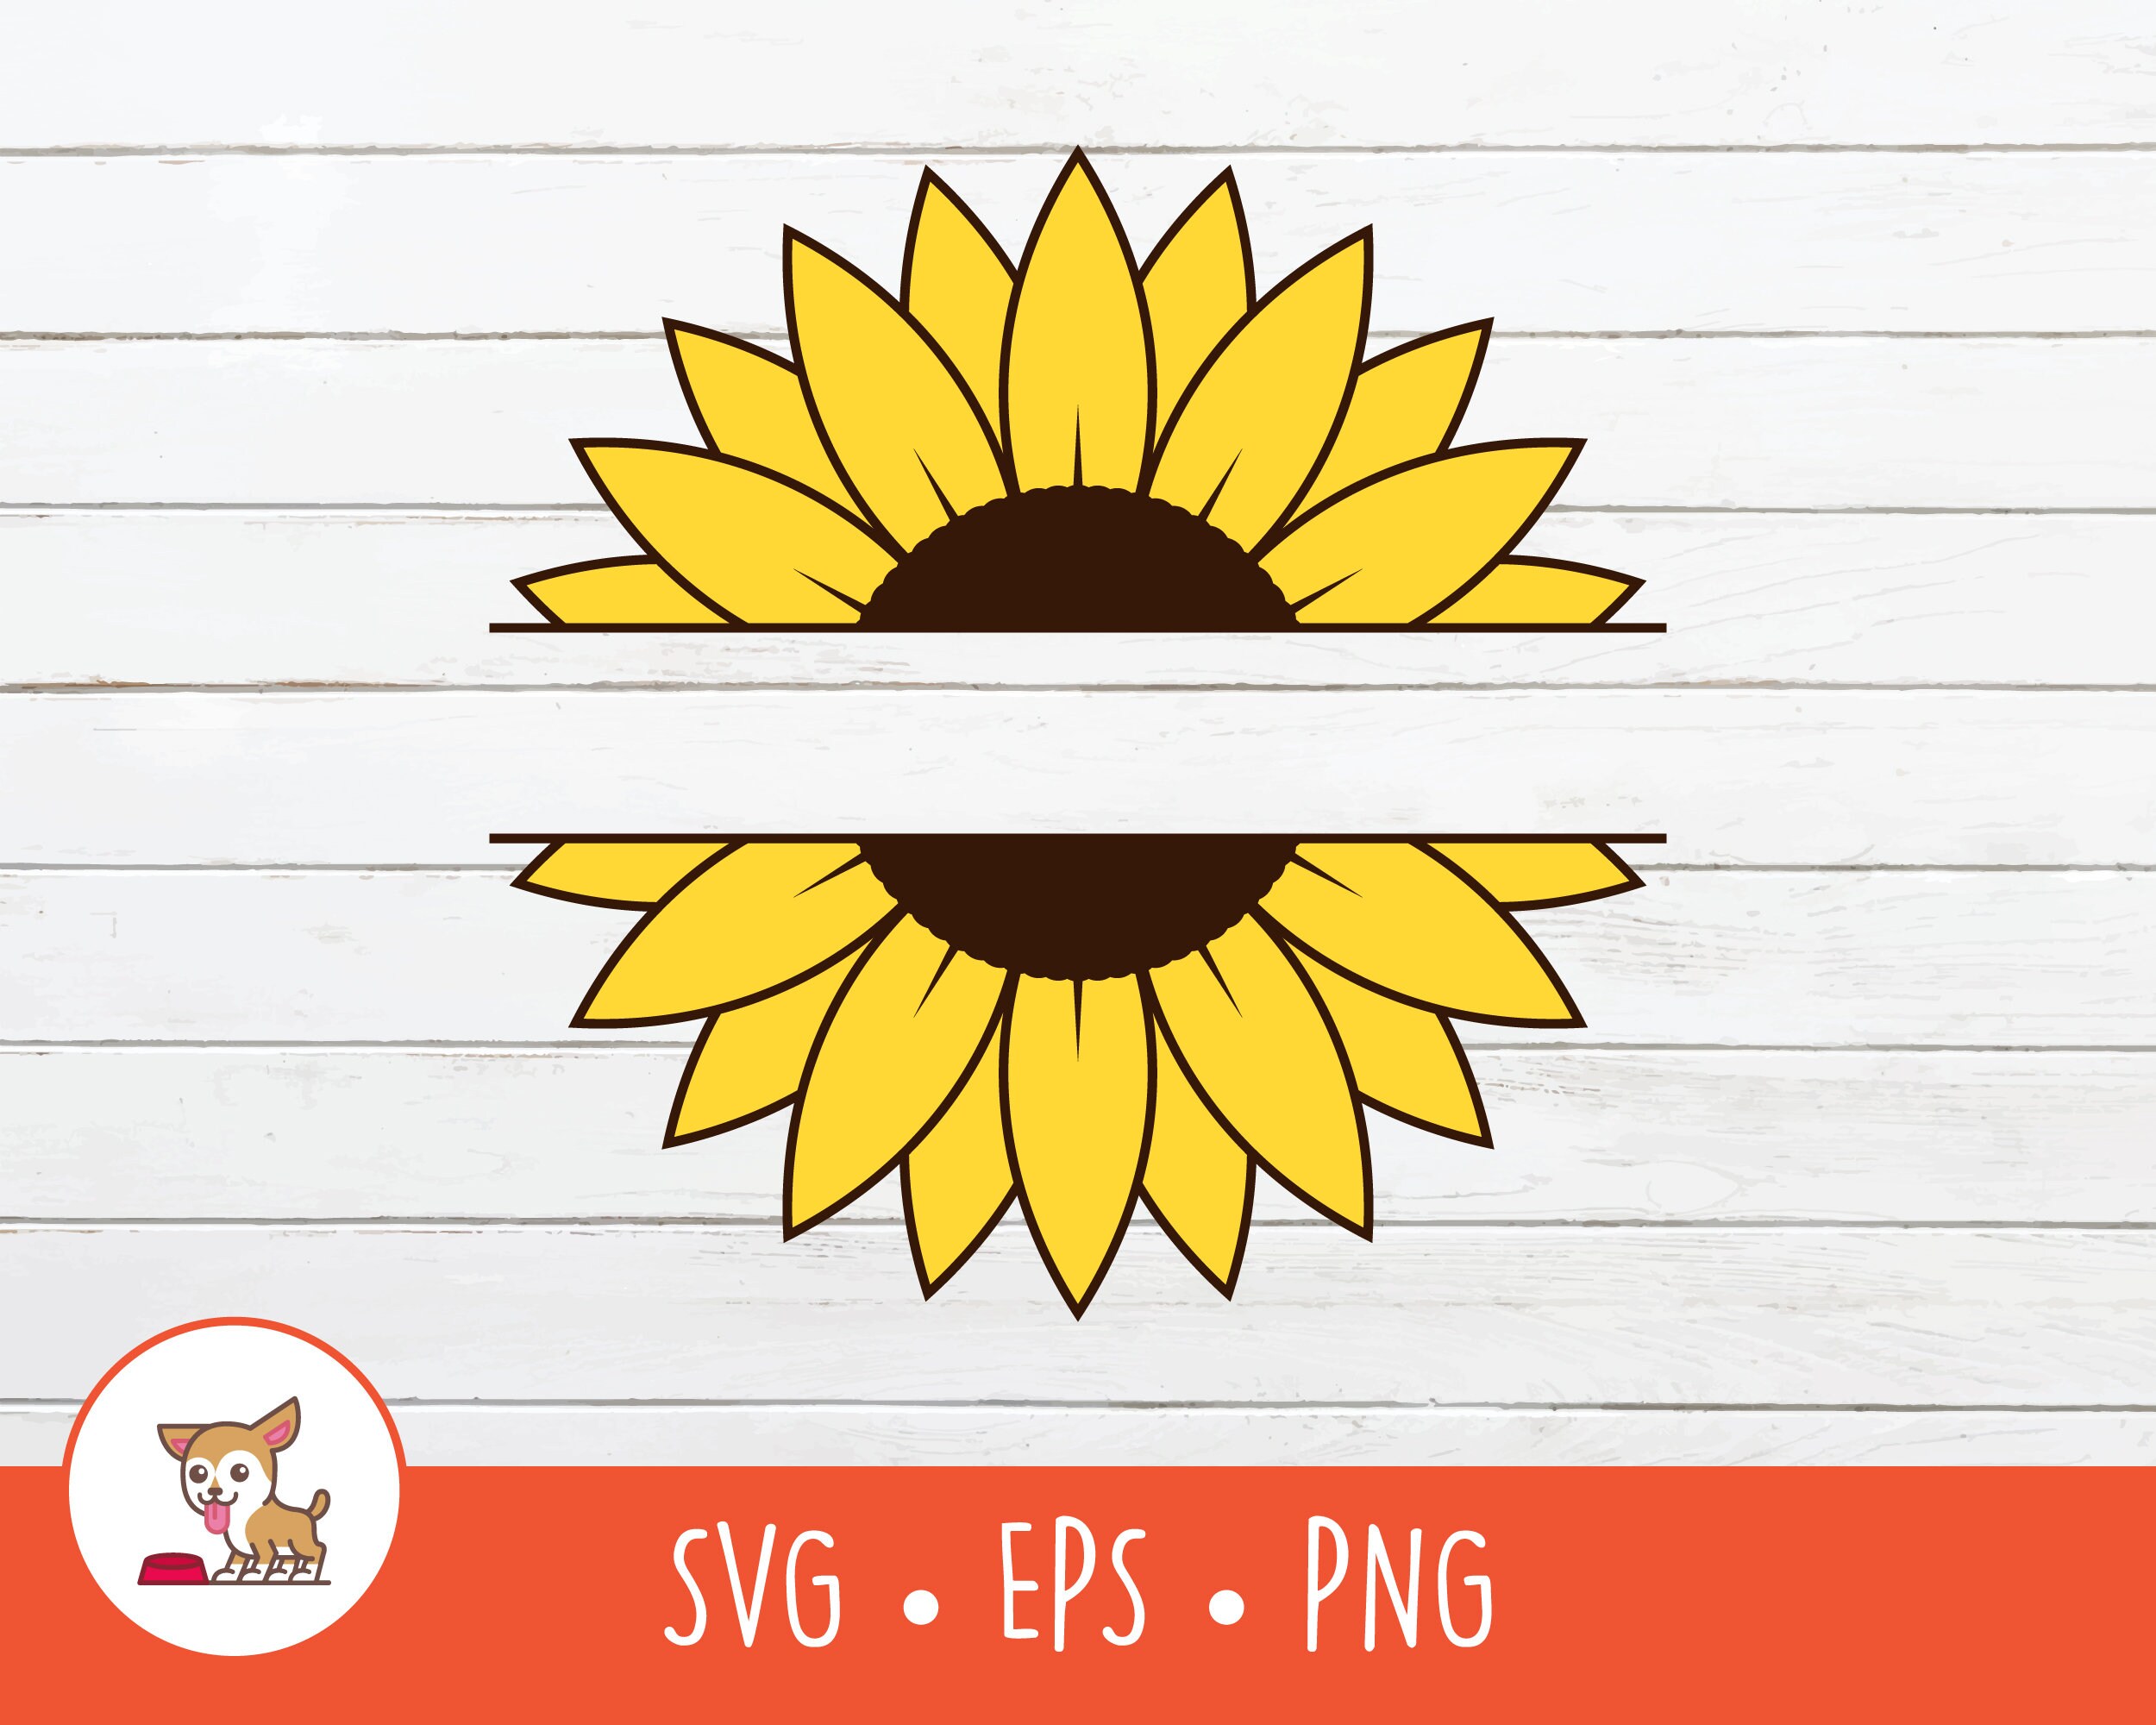 Sunflower SVG Split Sunflower Name Frame Sunflower Clipart - Etsy